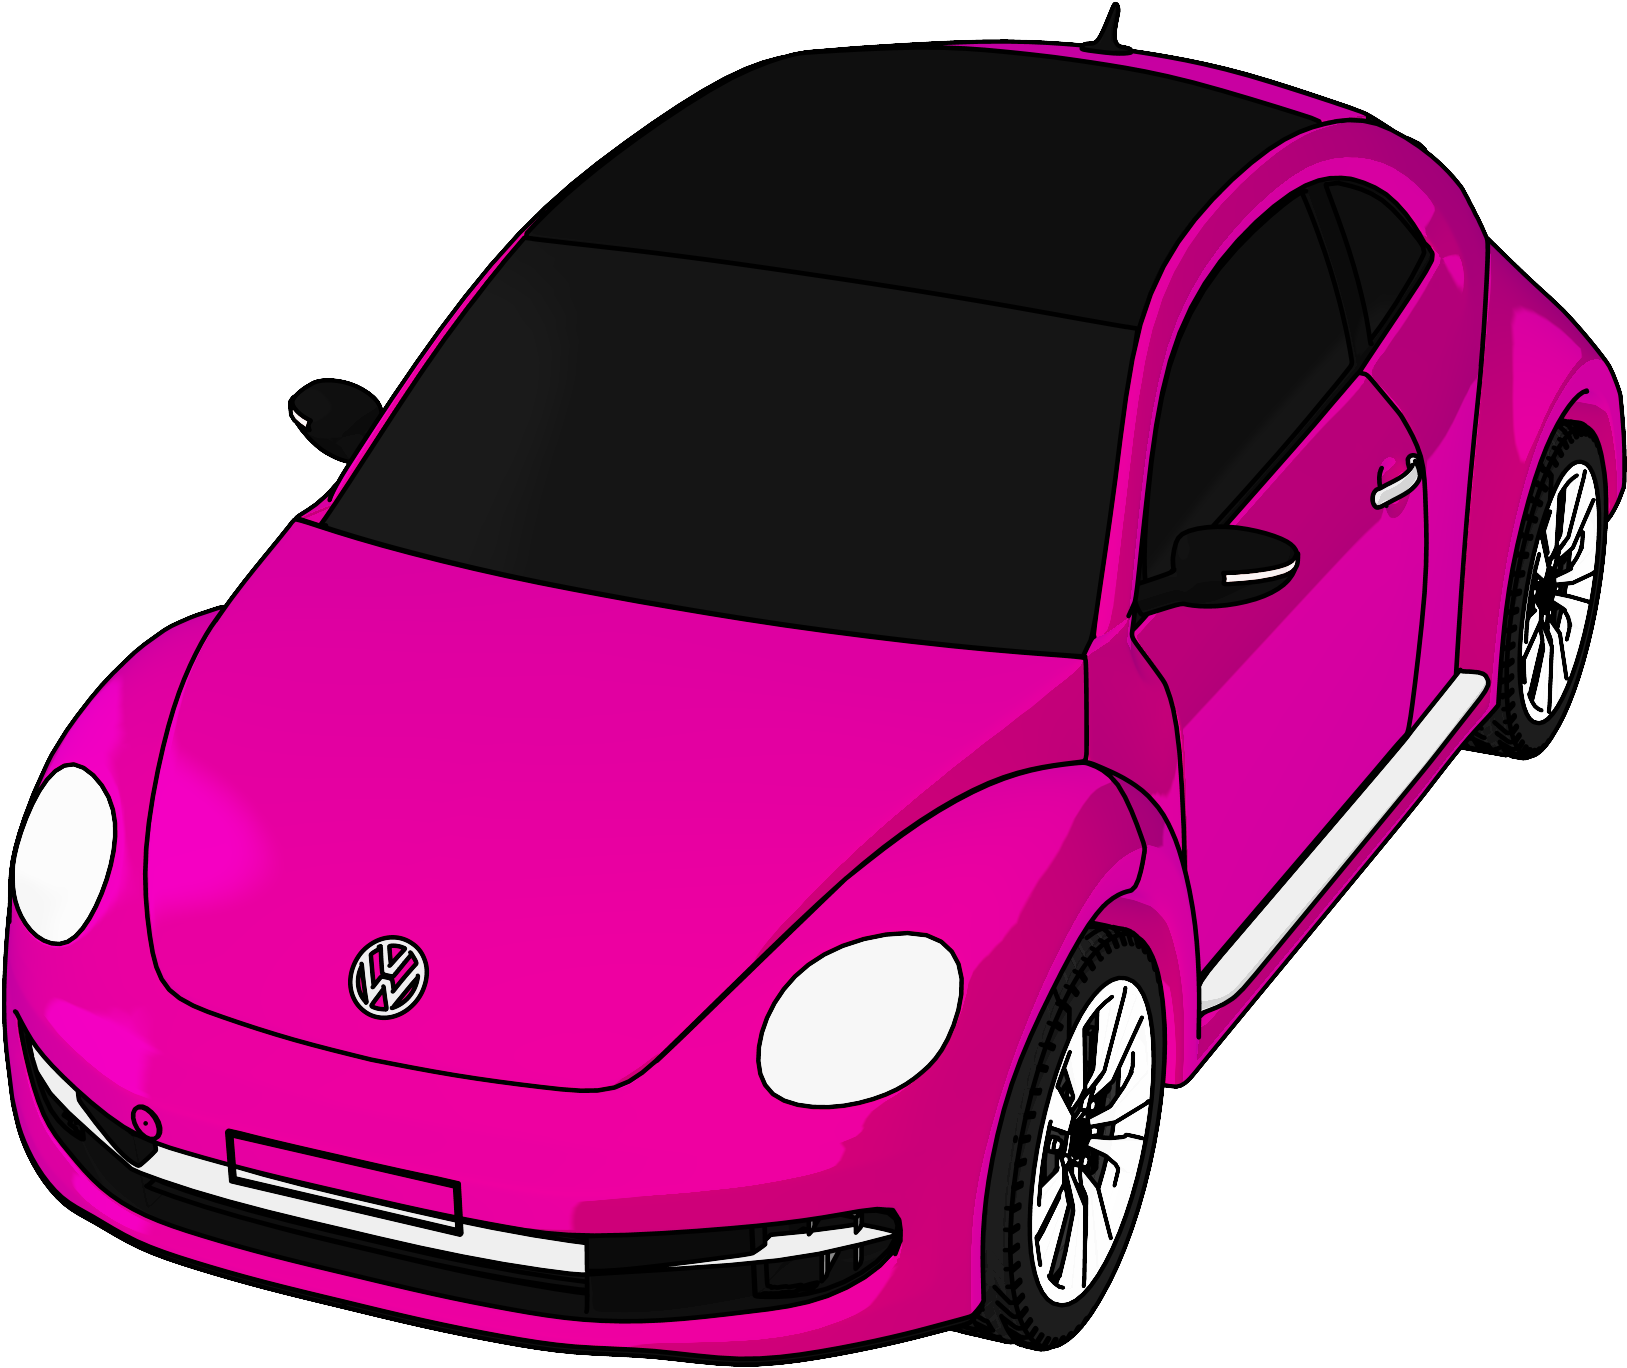 Vw Volkswagen Beetle Perspective View Cartoon Clipart - Vw Beetle Cartoon (1684x1404)